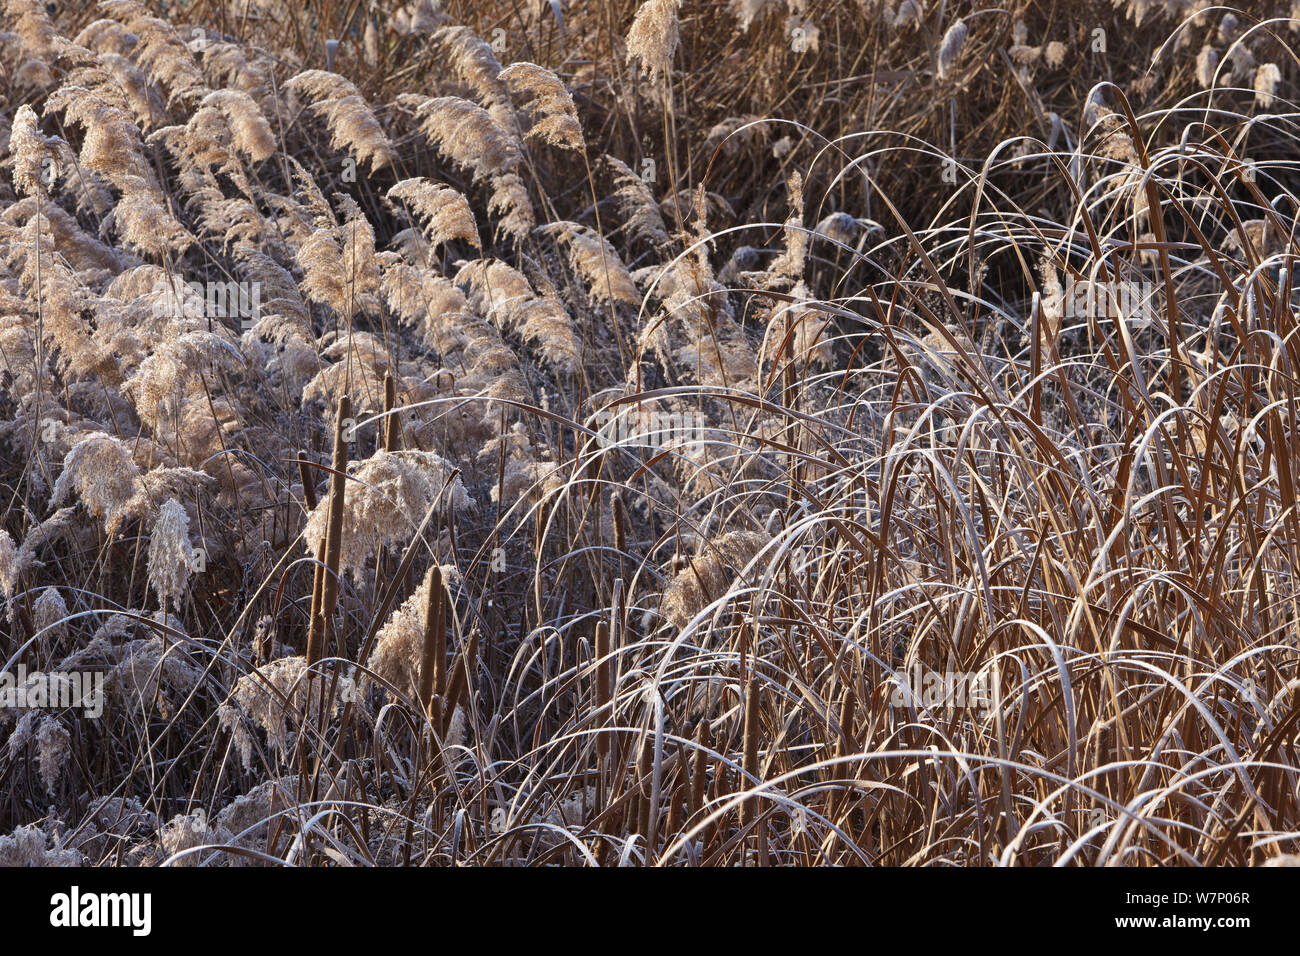 La végétation avec des quenouilles (Typha) et roseaux entourant le lac Ivars givrée en hiver, province de Lleida, Espagne, janvier Banque D'Images